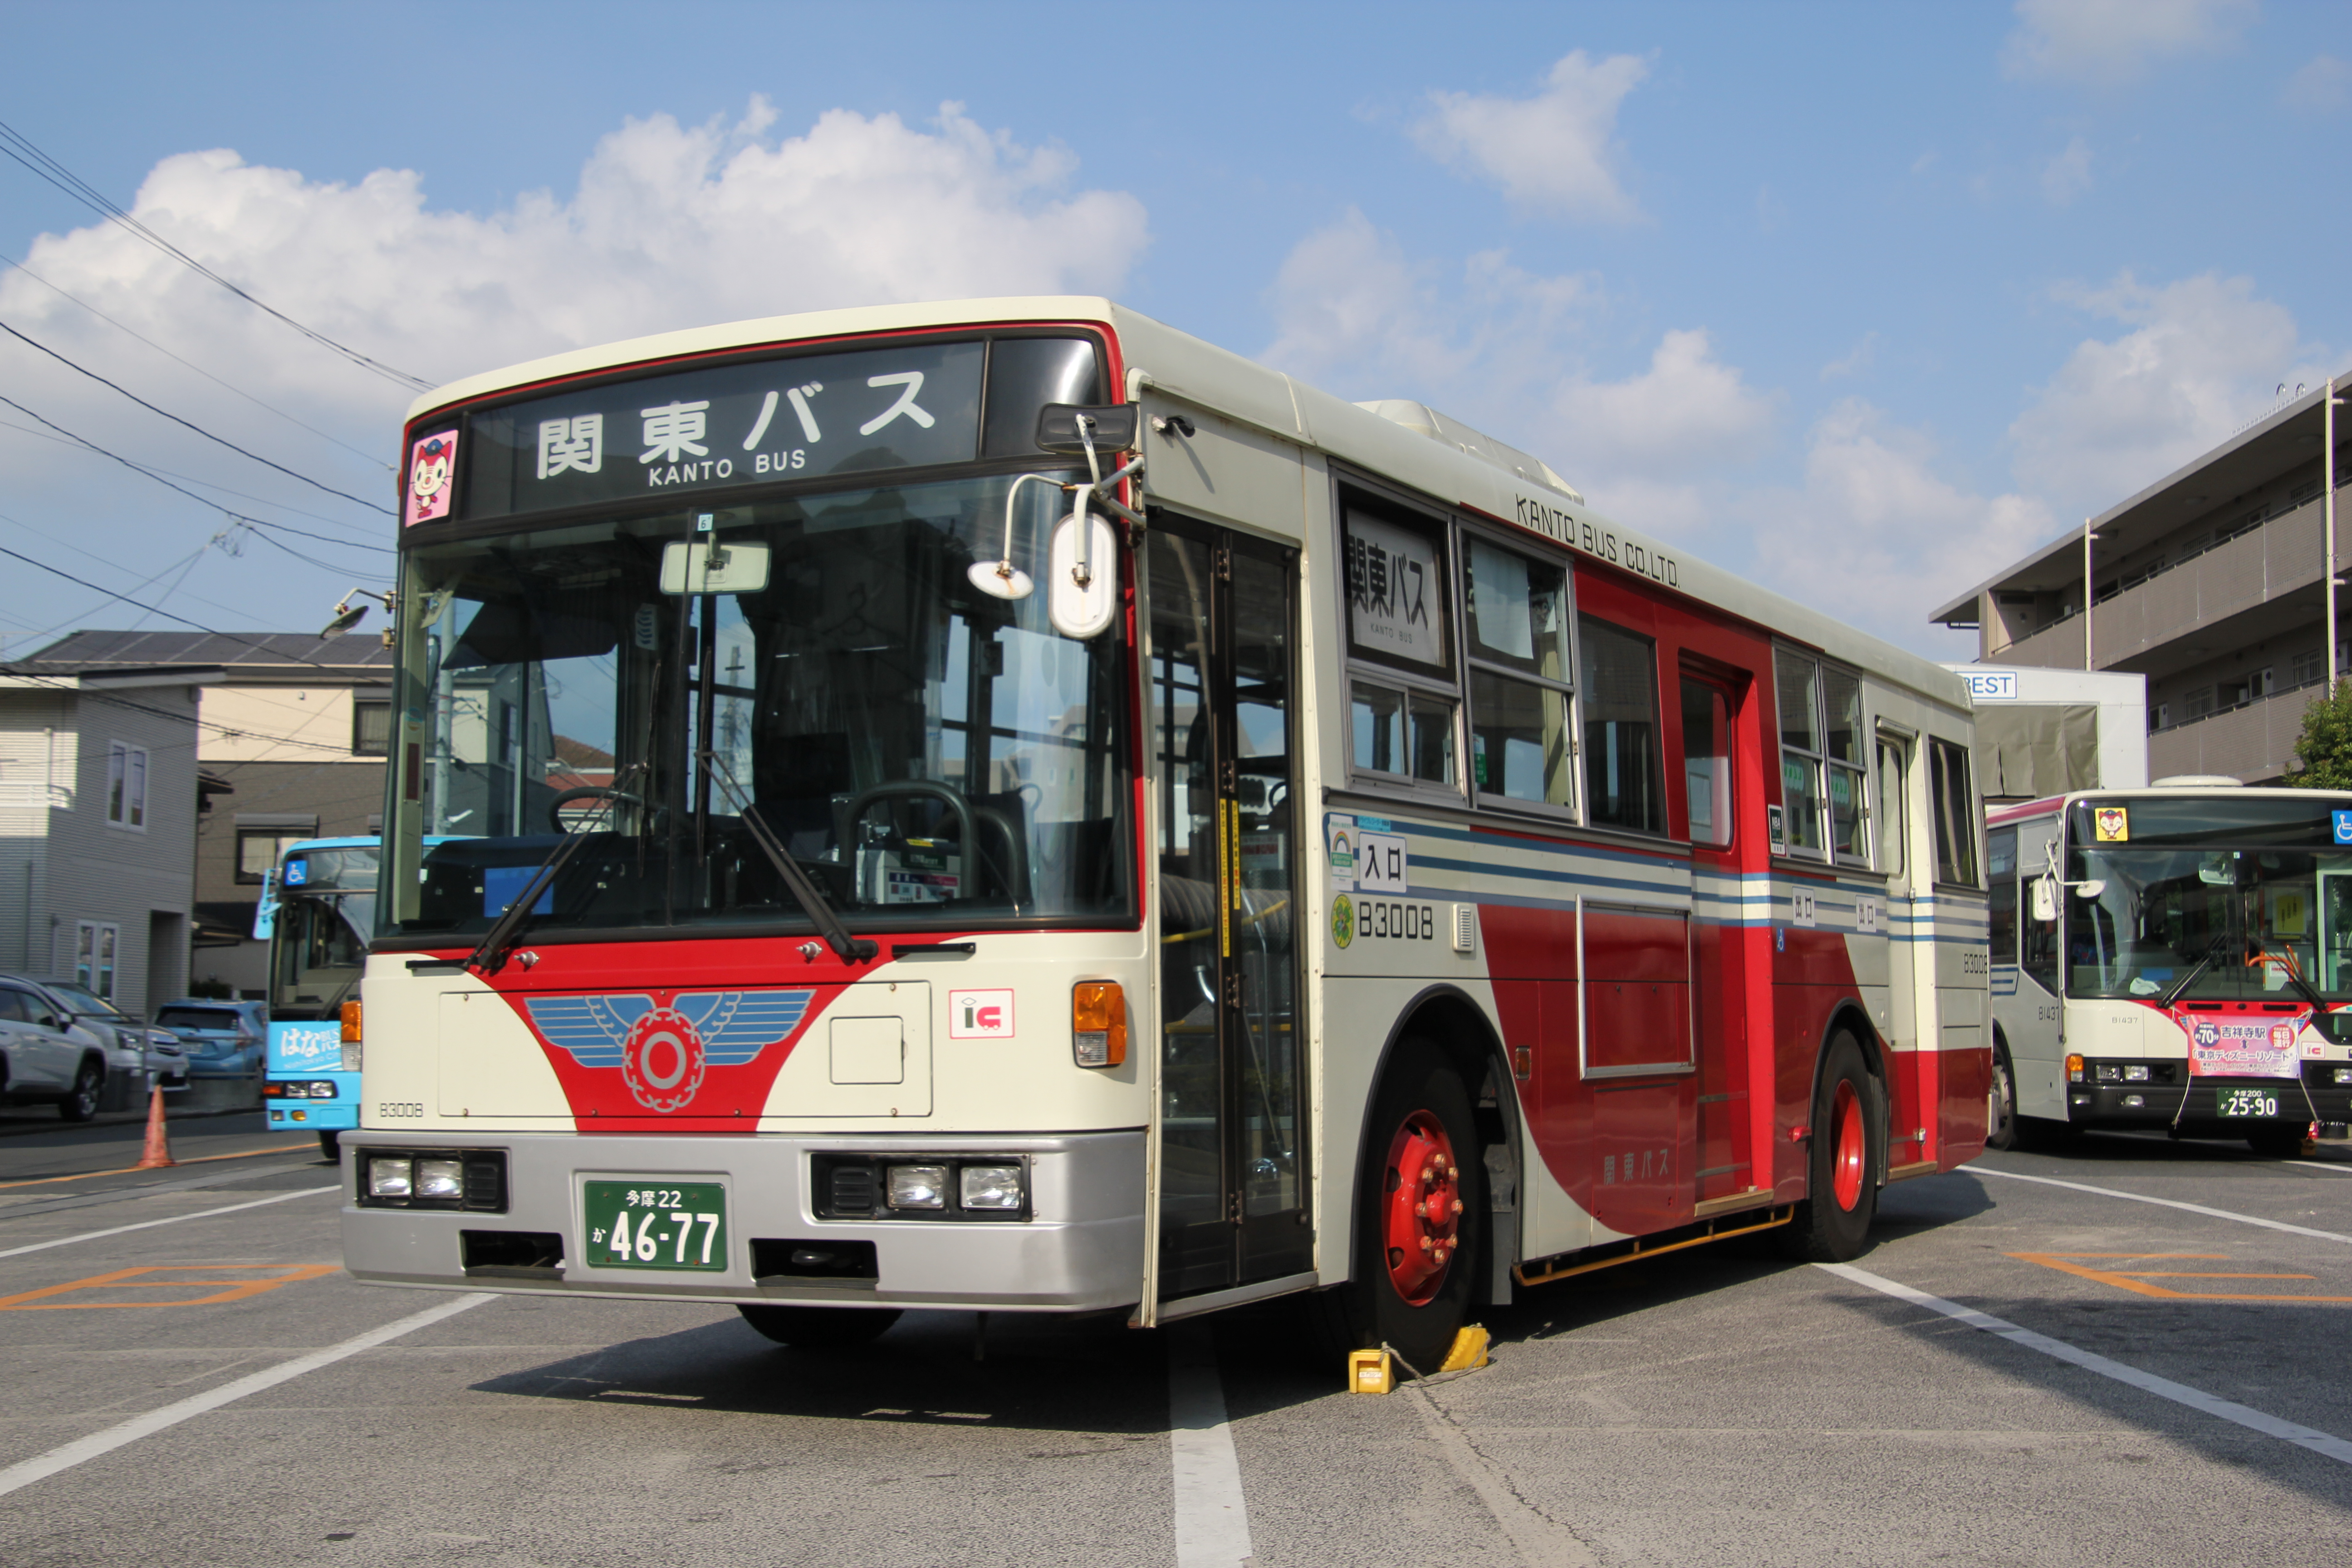 バスとタクシーのひろば イン 小平22 008が登場します 5月日10 00追記 新着情報 中央線沿線の路線バス 関東バス株式会社